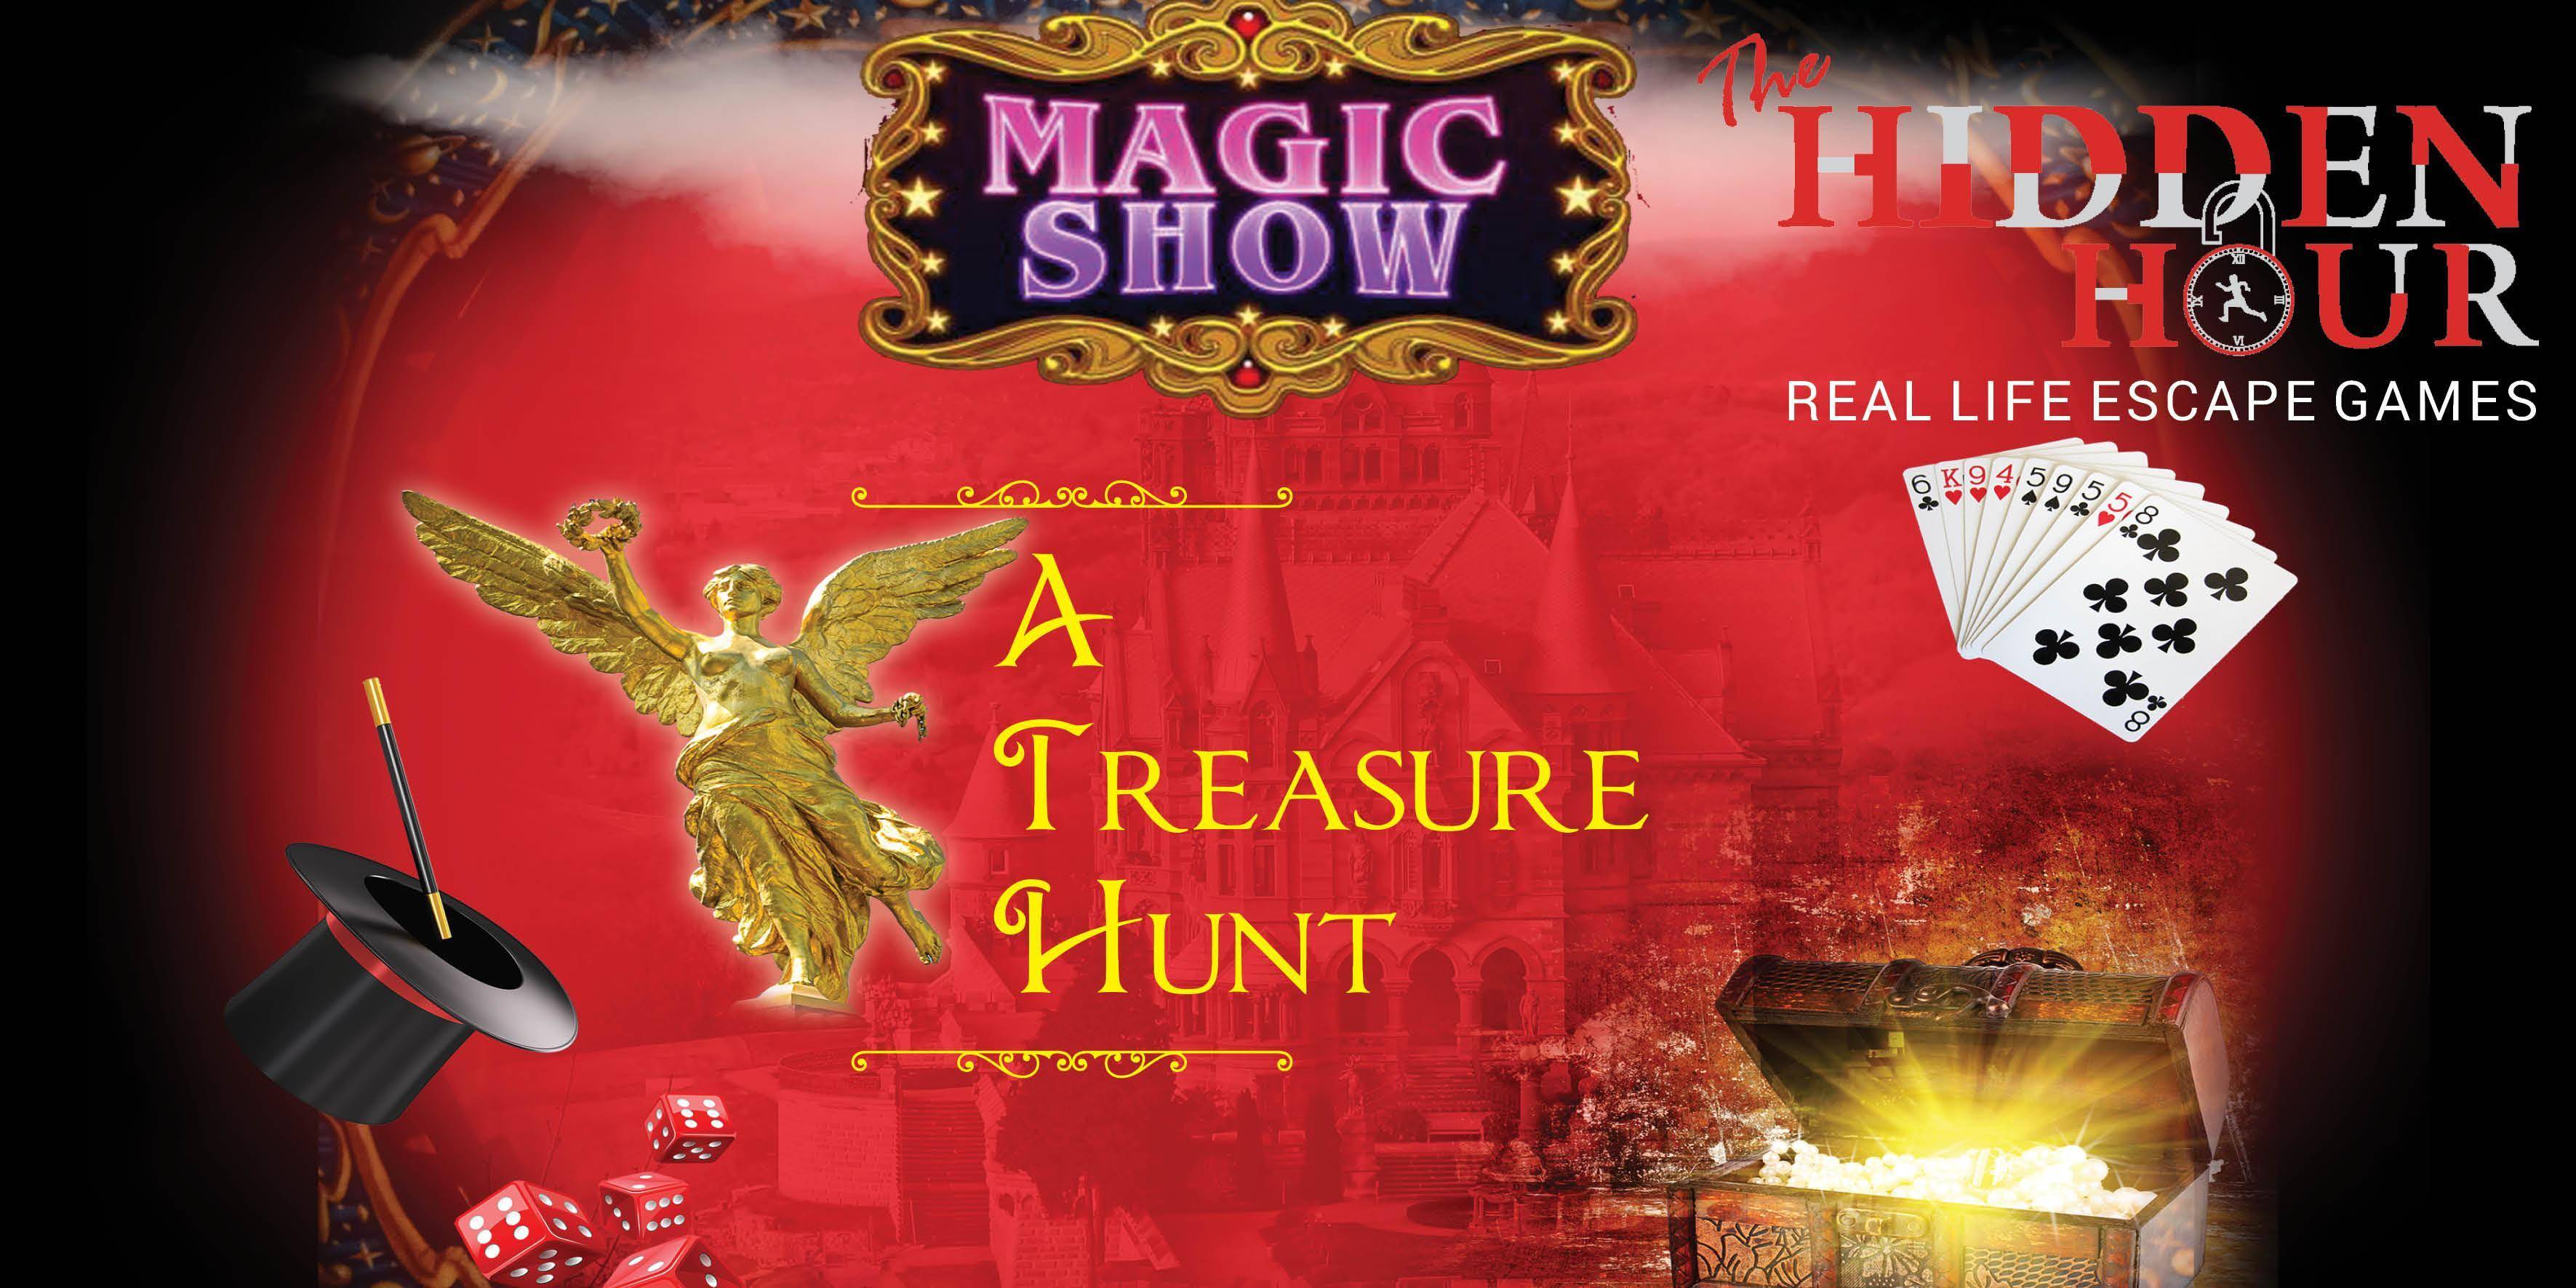 Magic Show- A Treasure Hunt